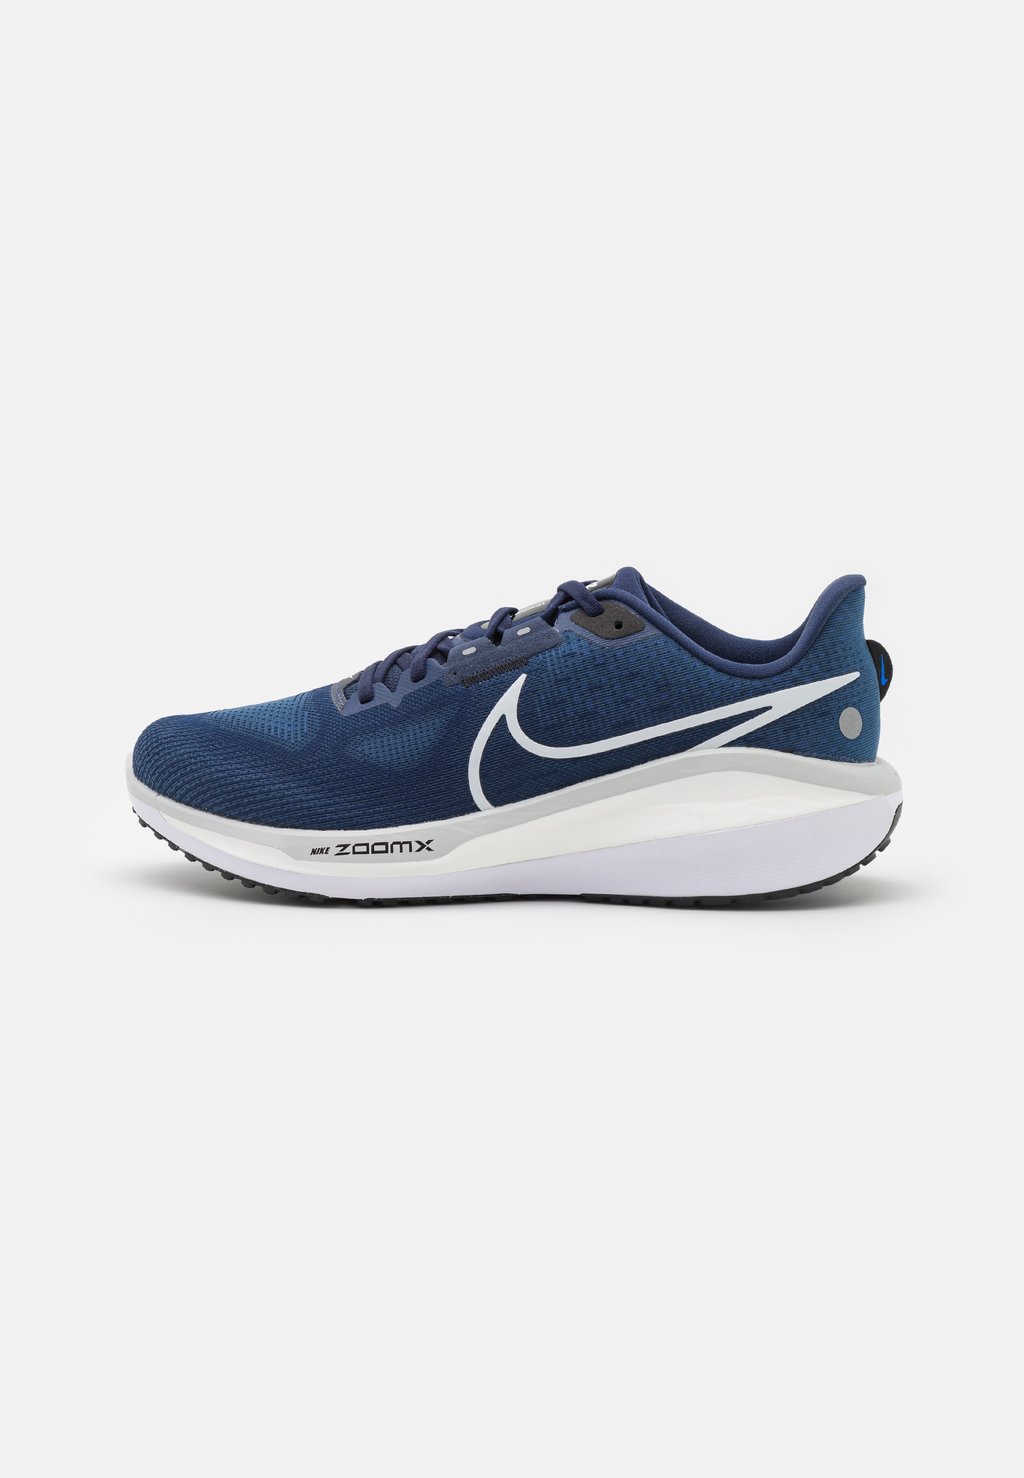 Нейтральные кроссовки Vomero 17 Nike, цвет midnight navy/pure platinum/black/racer blue